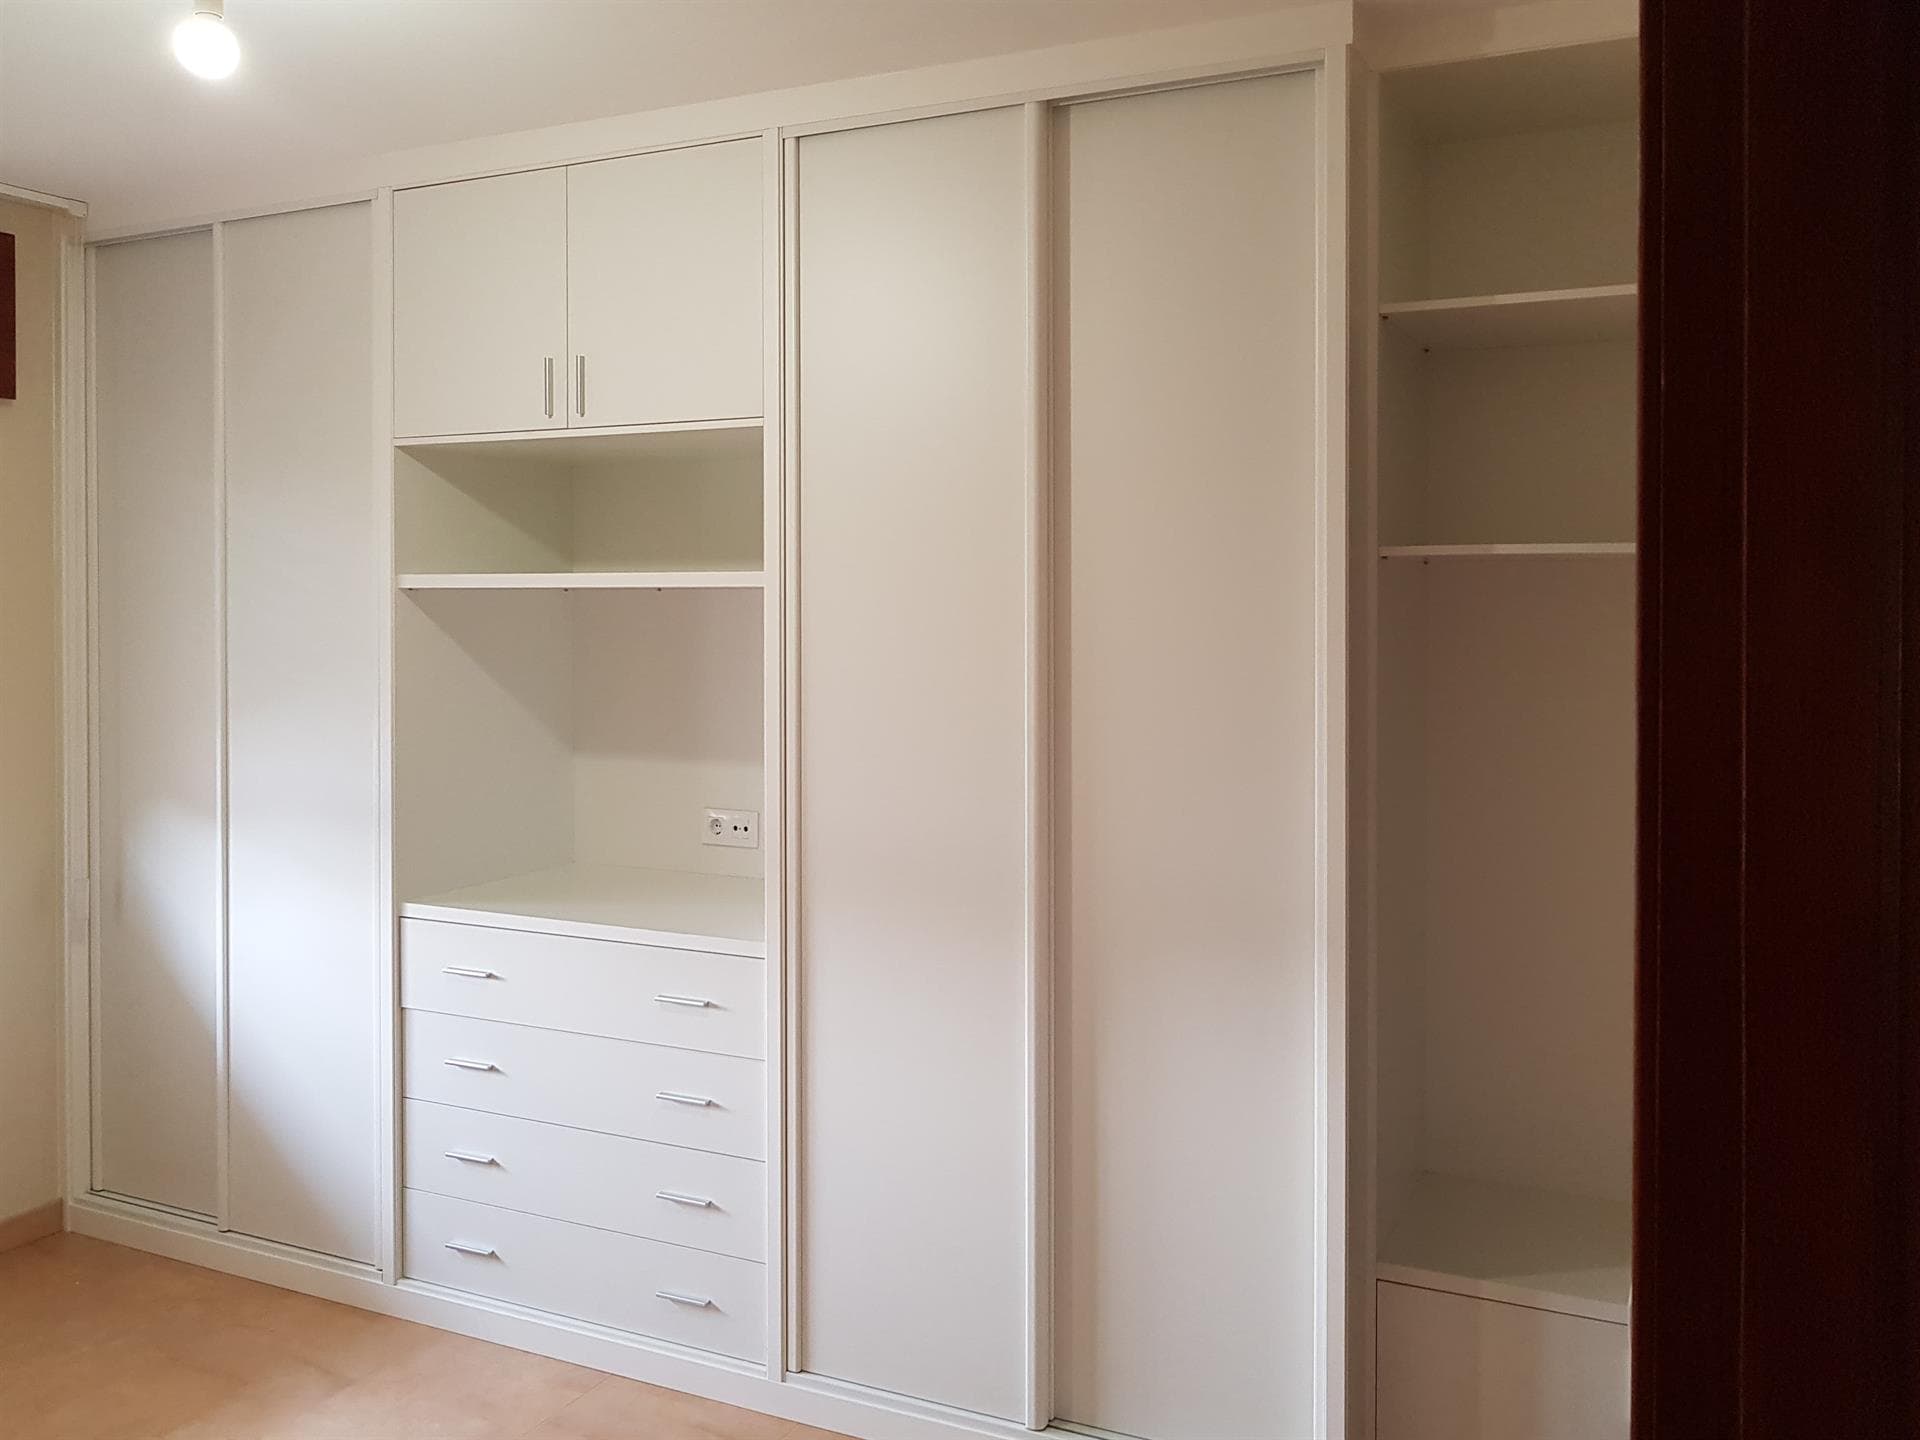 Armafal puede dar forma al armario que tu hogar necesita